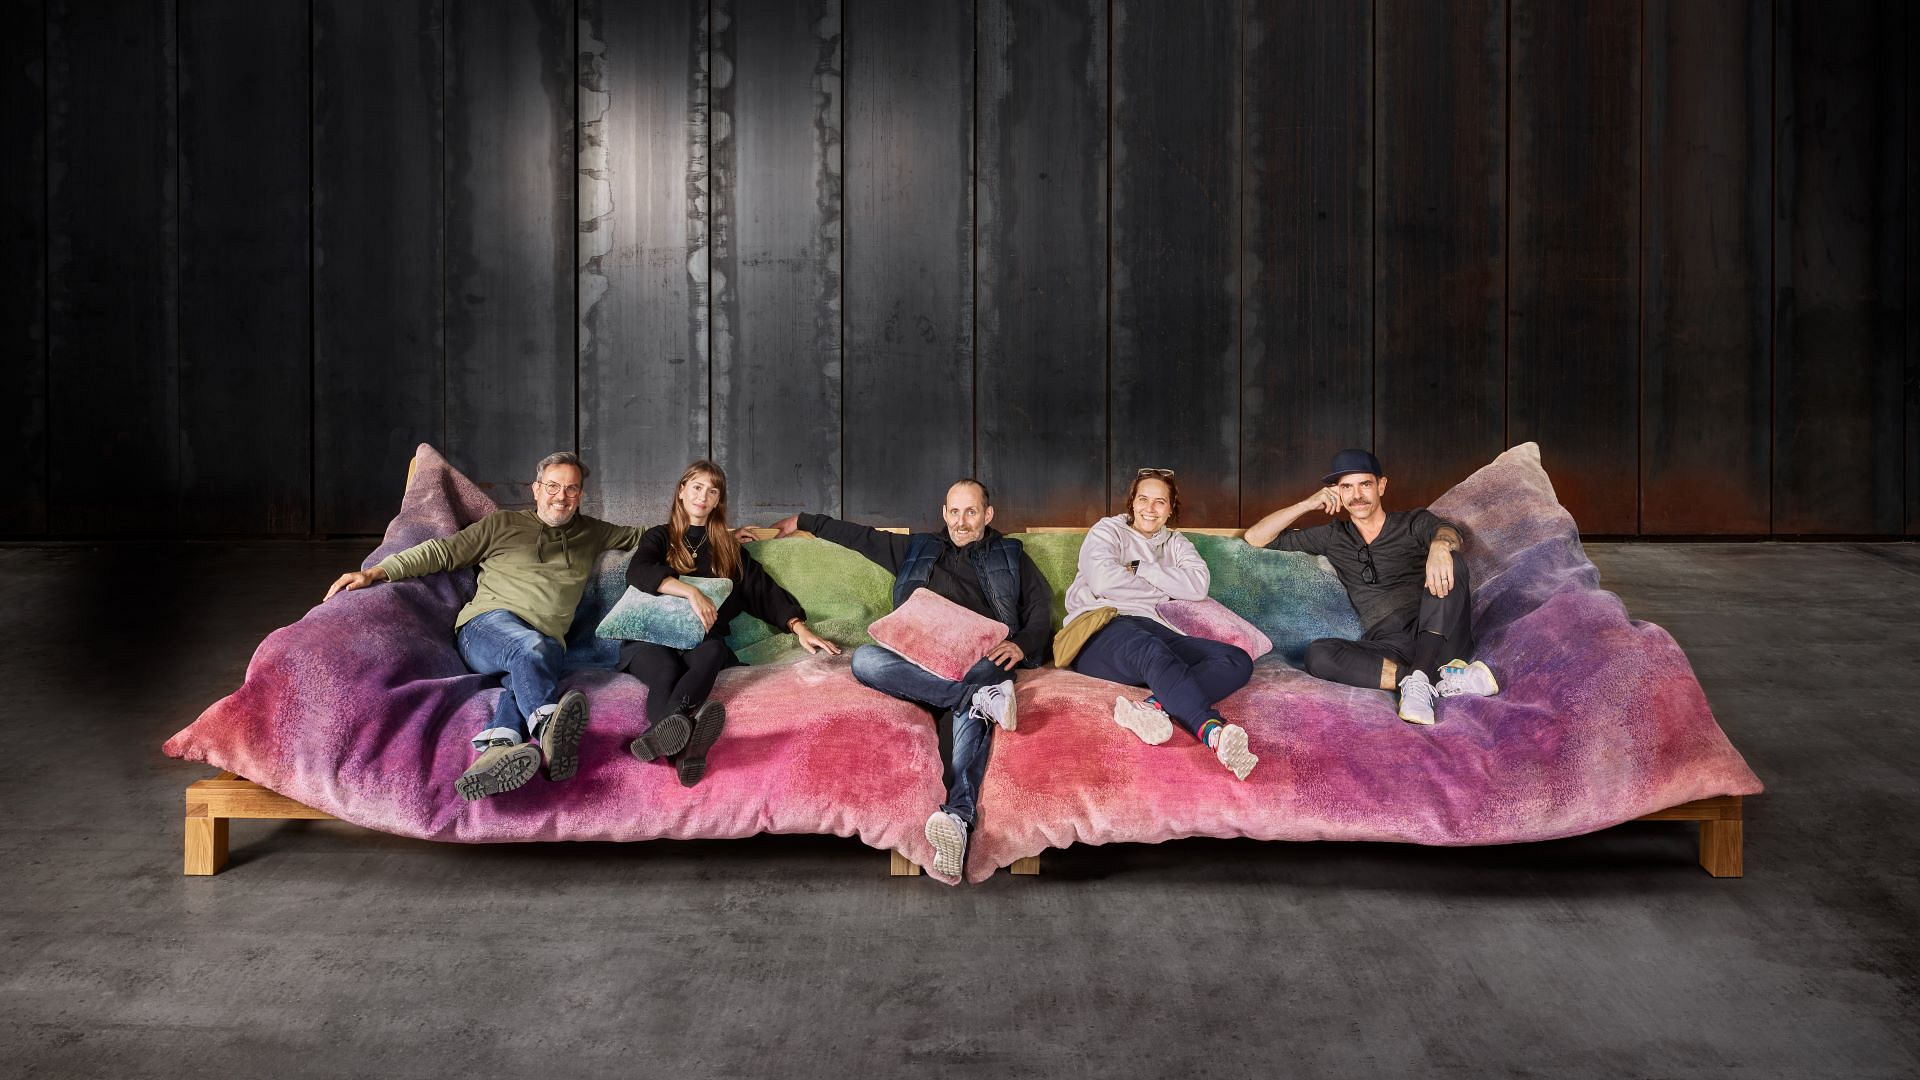 Ceniony projektant dywanów Jan Kath stworzył swoją pierwszą kolekcję mebli